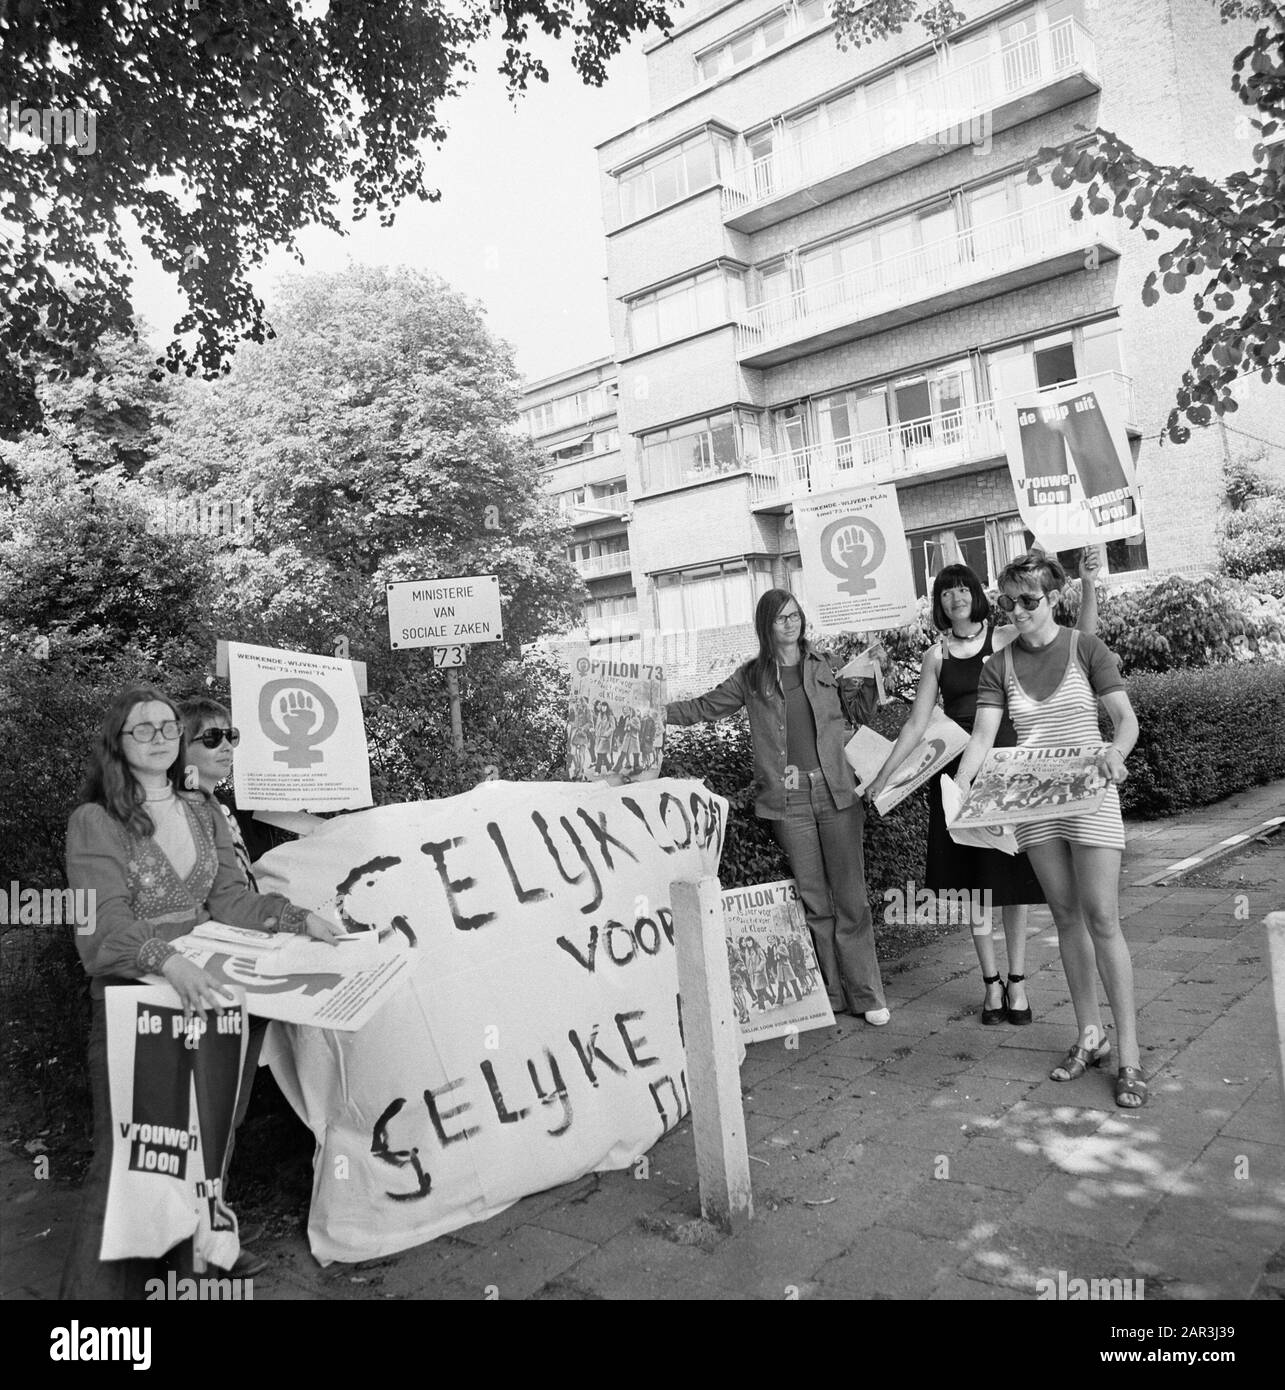 Frauen demonstrieren für gleiche Löhne im Sozialministerium Datum: 29. Juni 1973 Schlüsselwörter: Ministerium, Demonstrieren, Frauen Stockfoto